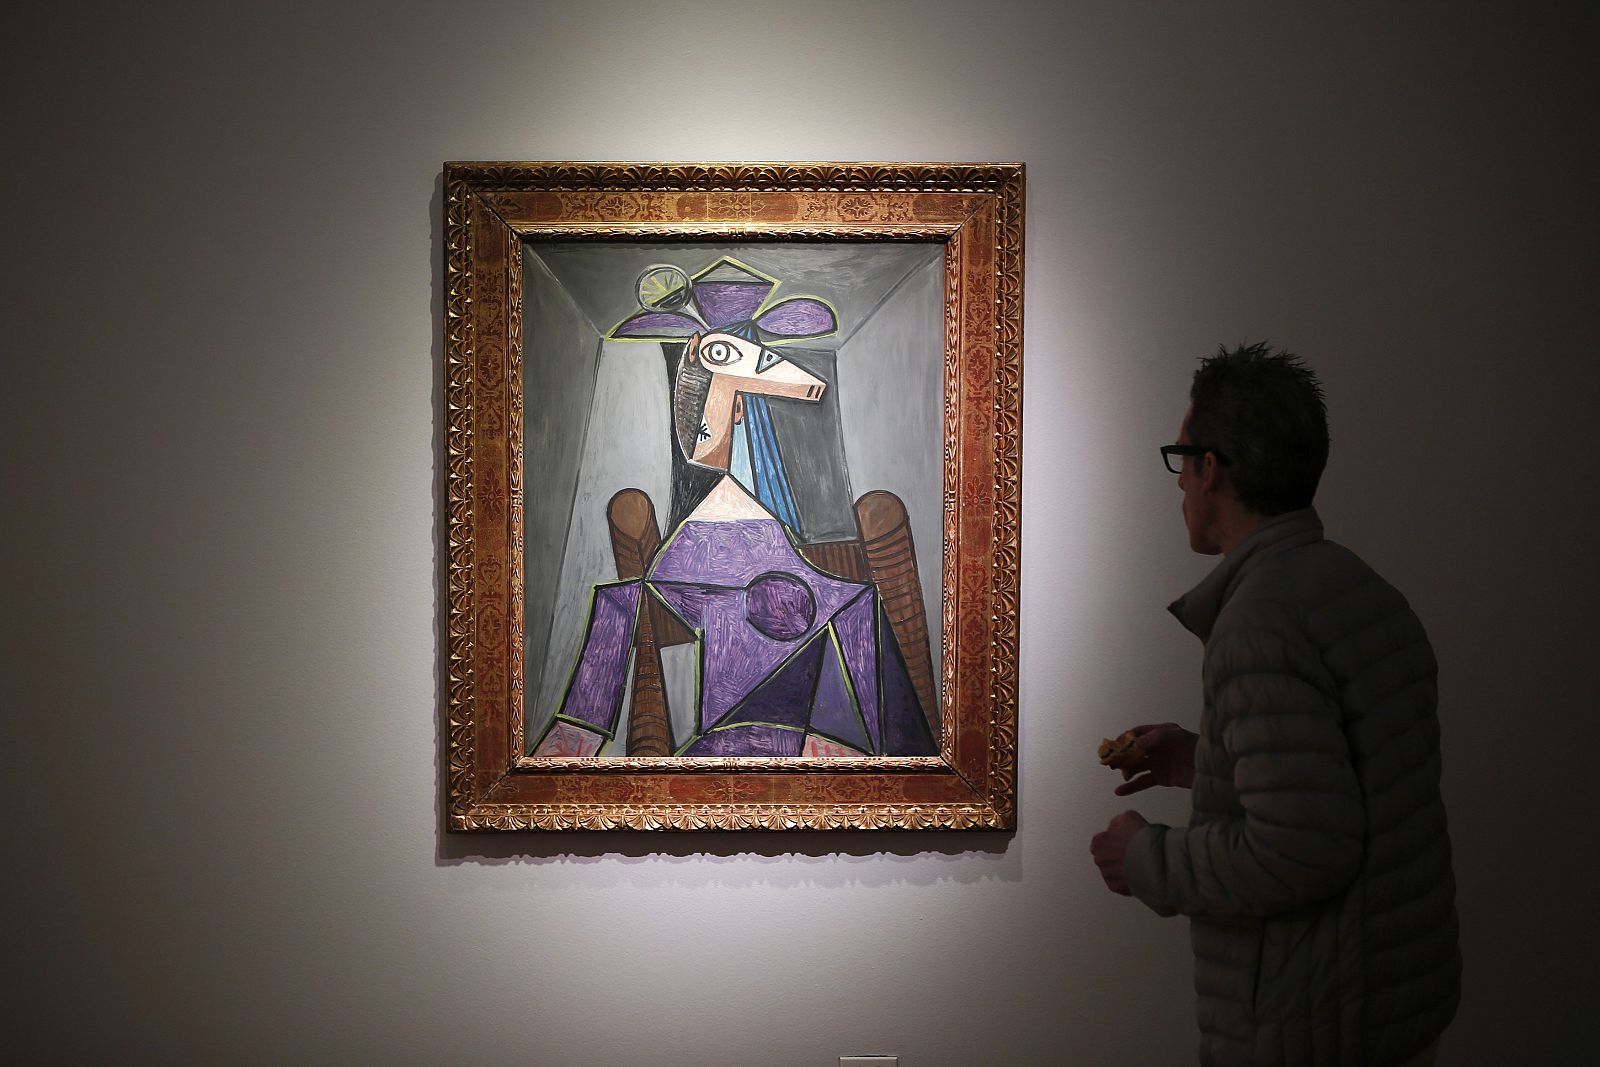 El retrato de Dora Maar realizado por Picasso ha sido la obra mejor valorada del artista malaqueño en la subasta de Christie's.